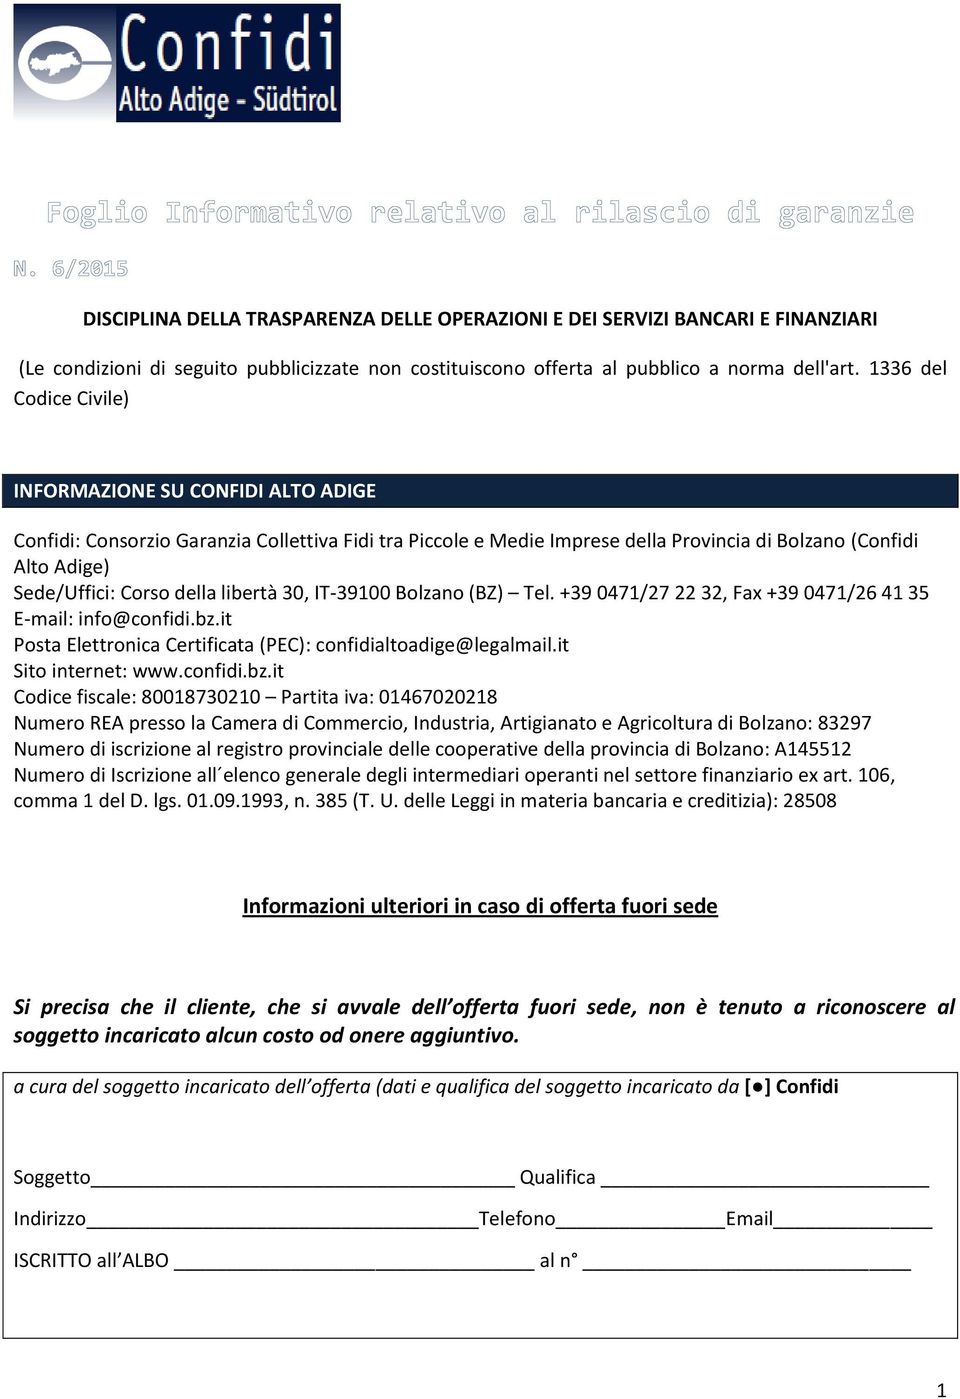 della libertà 30, IT-39100 Bolzano (BZ) Tel. +39 0471/27 22 32, Fax +39 0471/26 41 35 E-mail: info@confidi.bz.it Posta Elettronica Certificata (PEC): confidialtoadige@legalmail.it Sito internet: www.